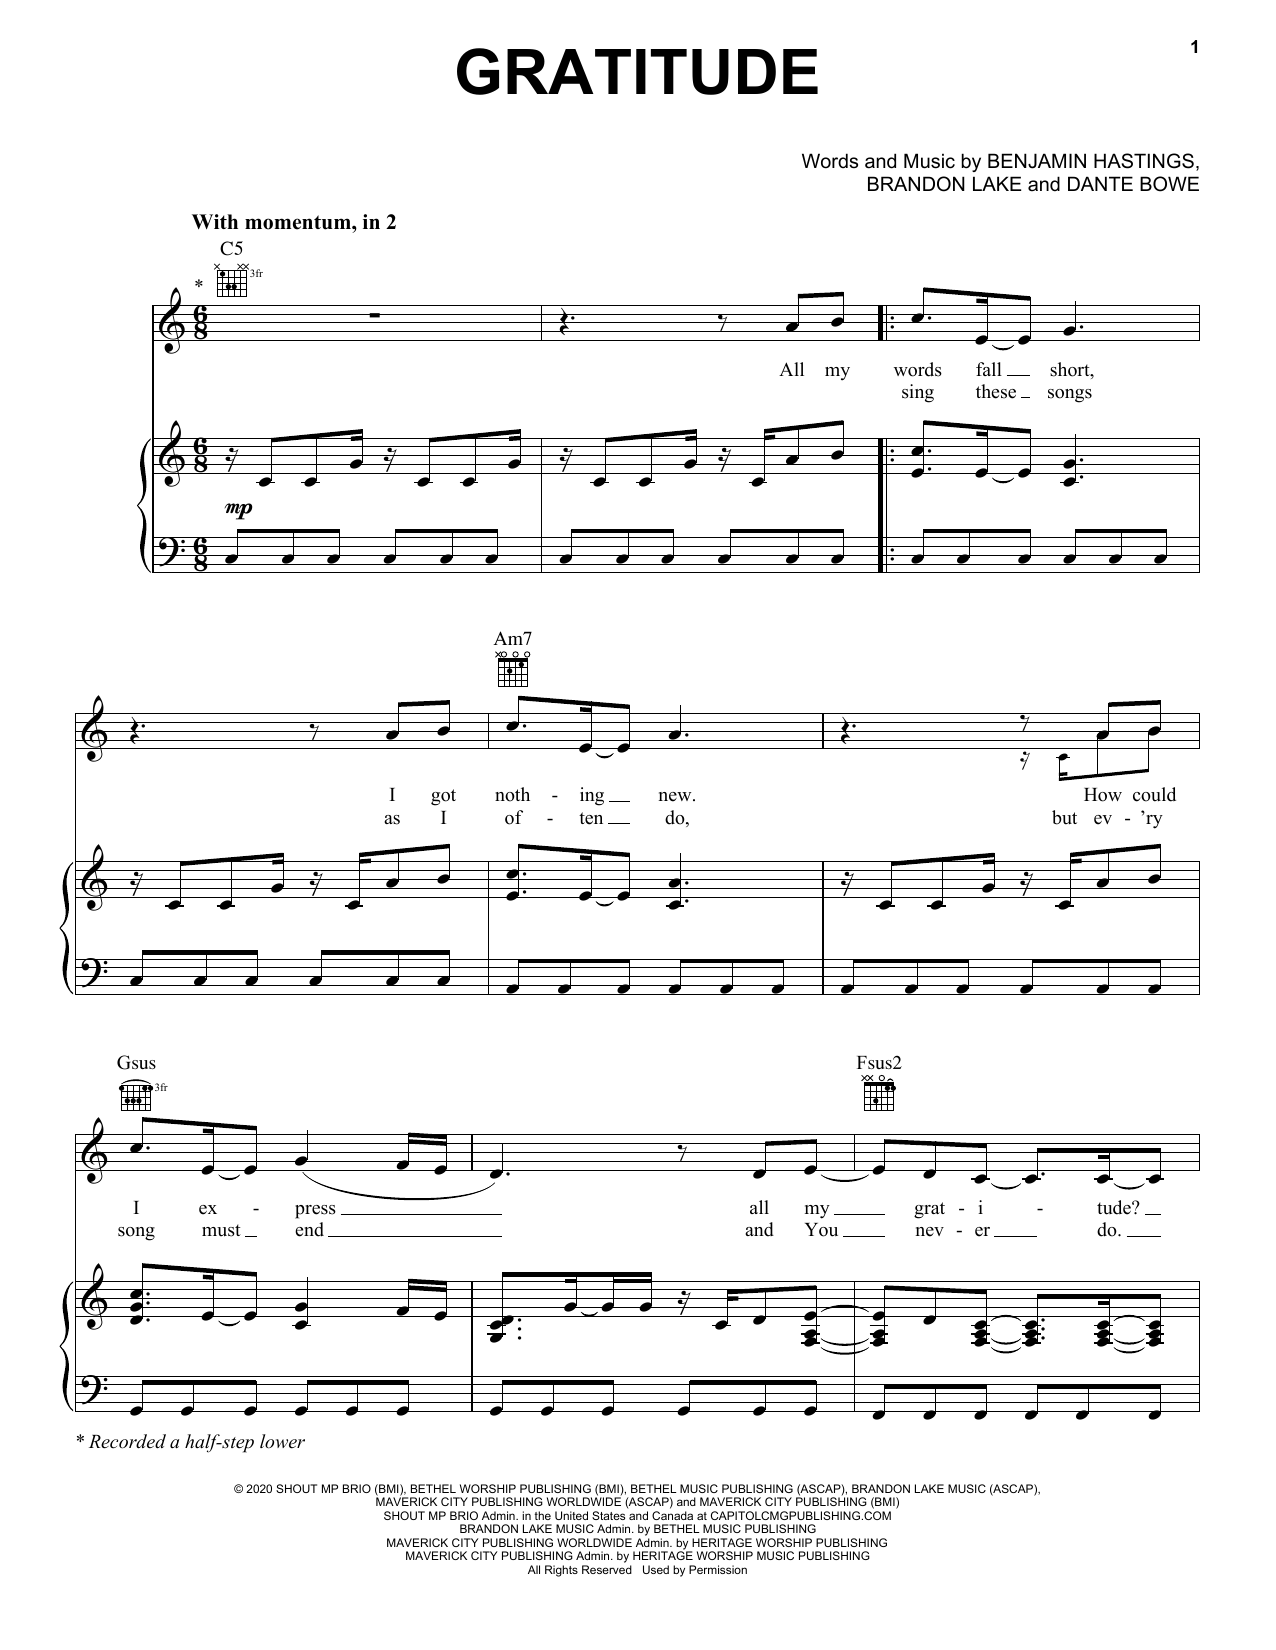 Brandon Lake Gratitude Sheet Music Notes & Chords for Lead Sheet / Fake Book - Download or Print PDF